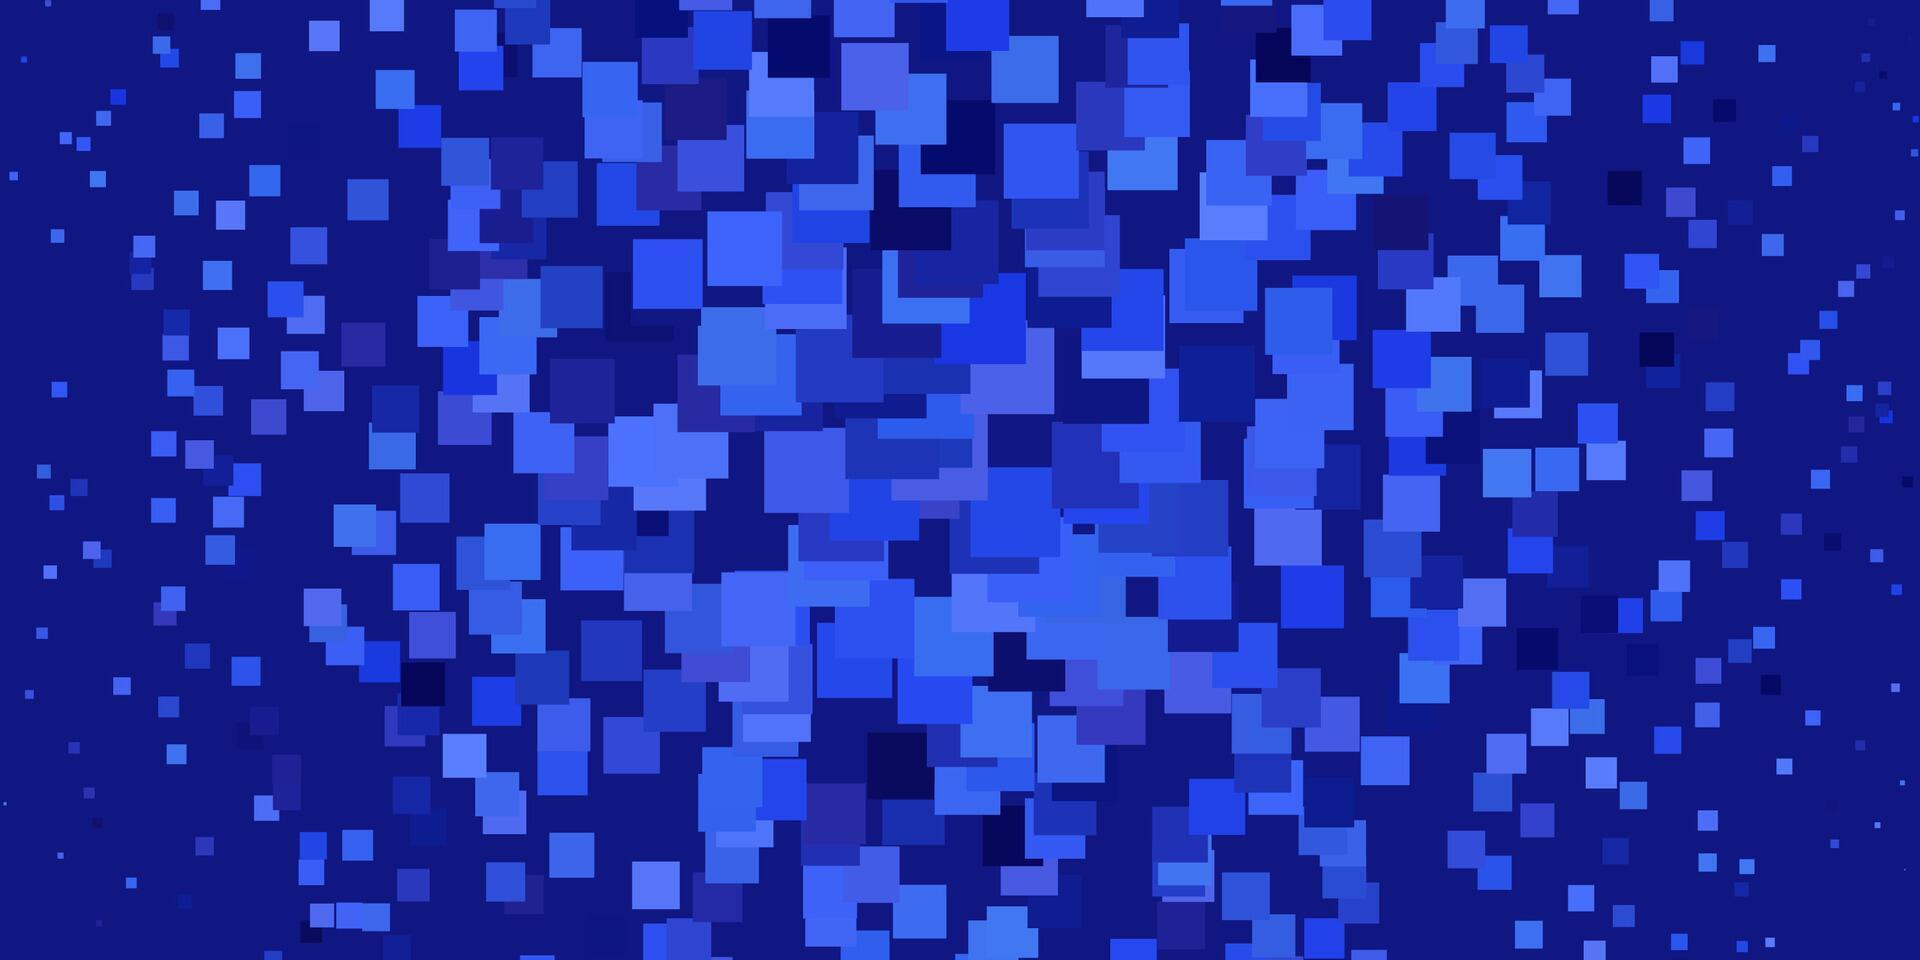 fundo azul claro do vetor no estilo poligonal.